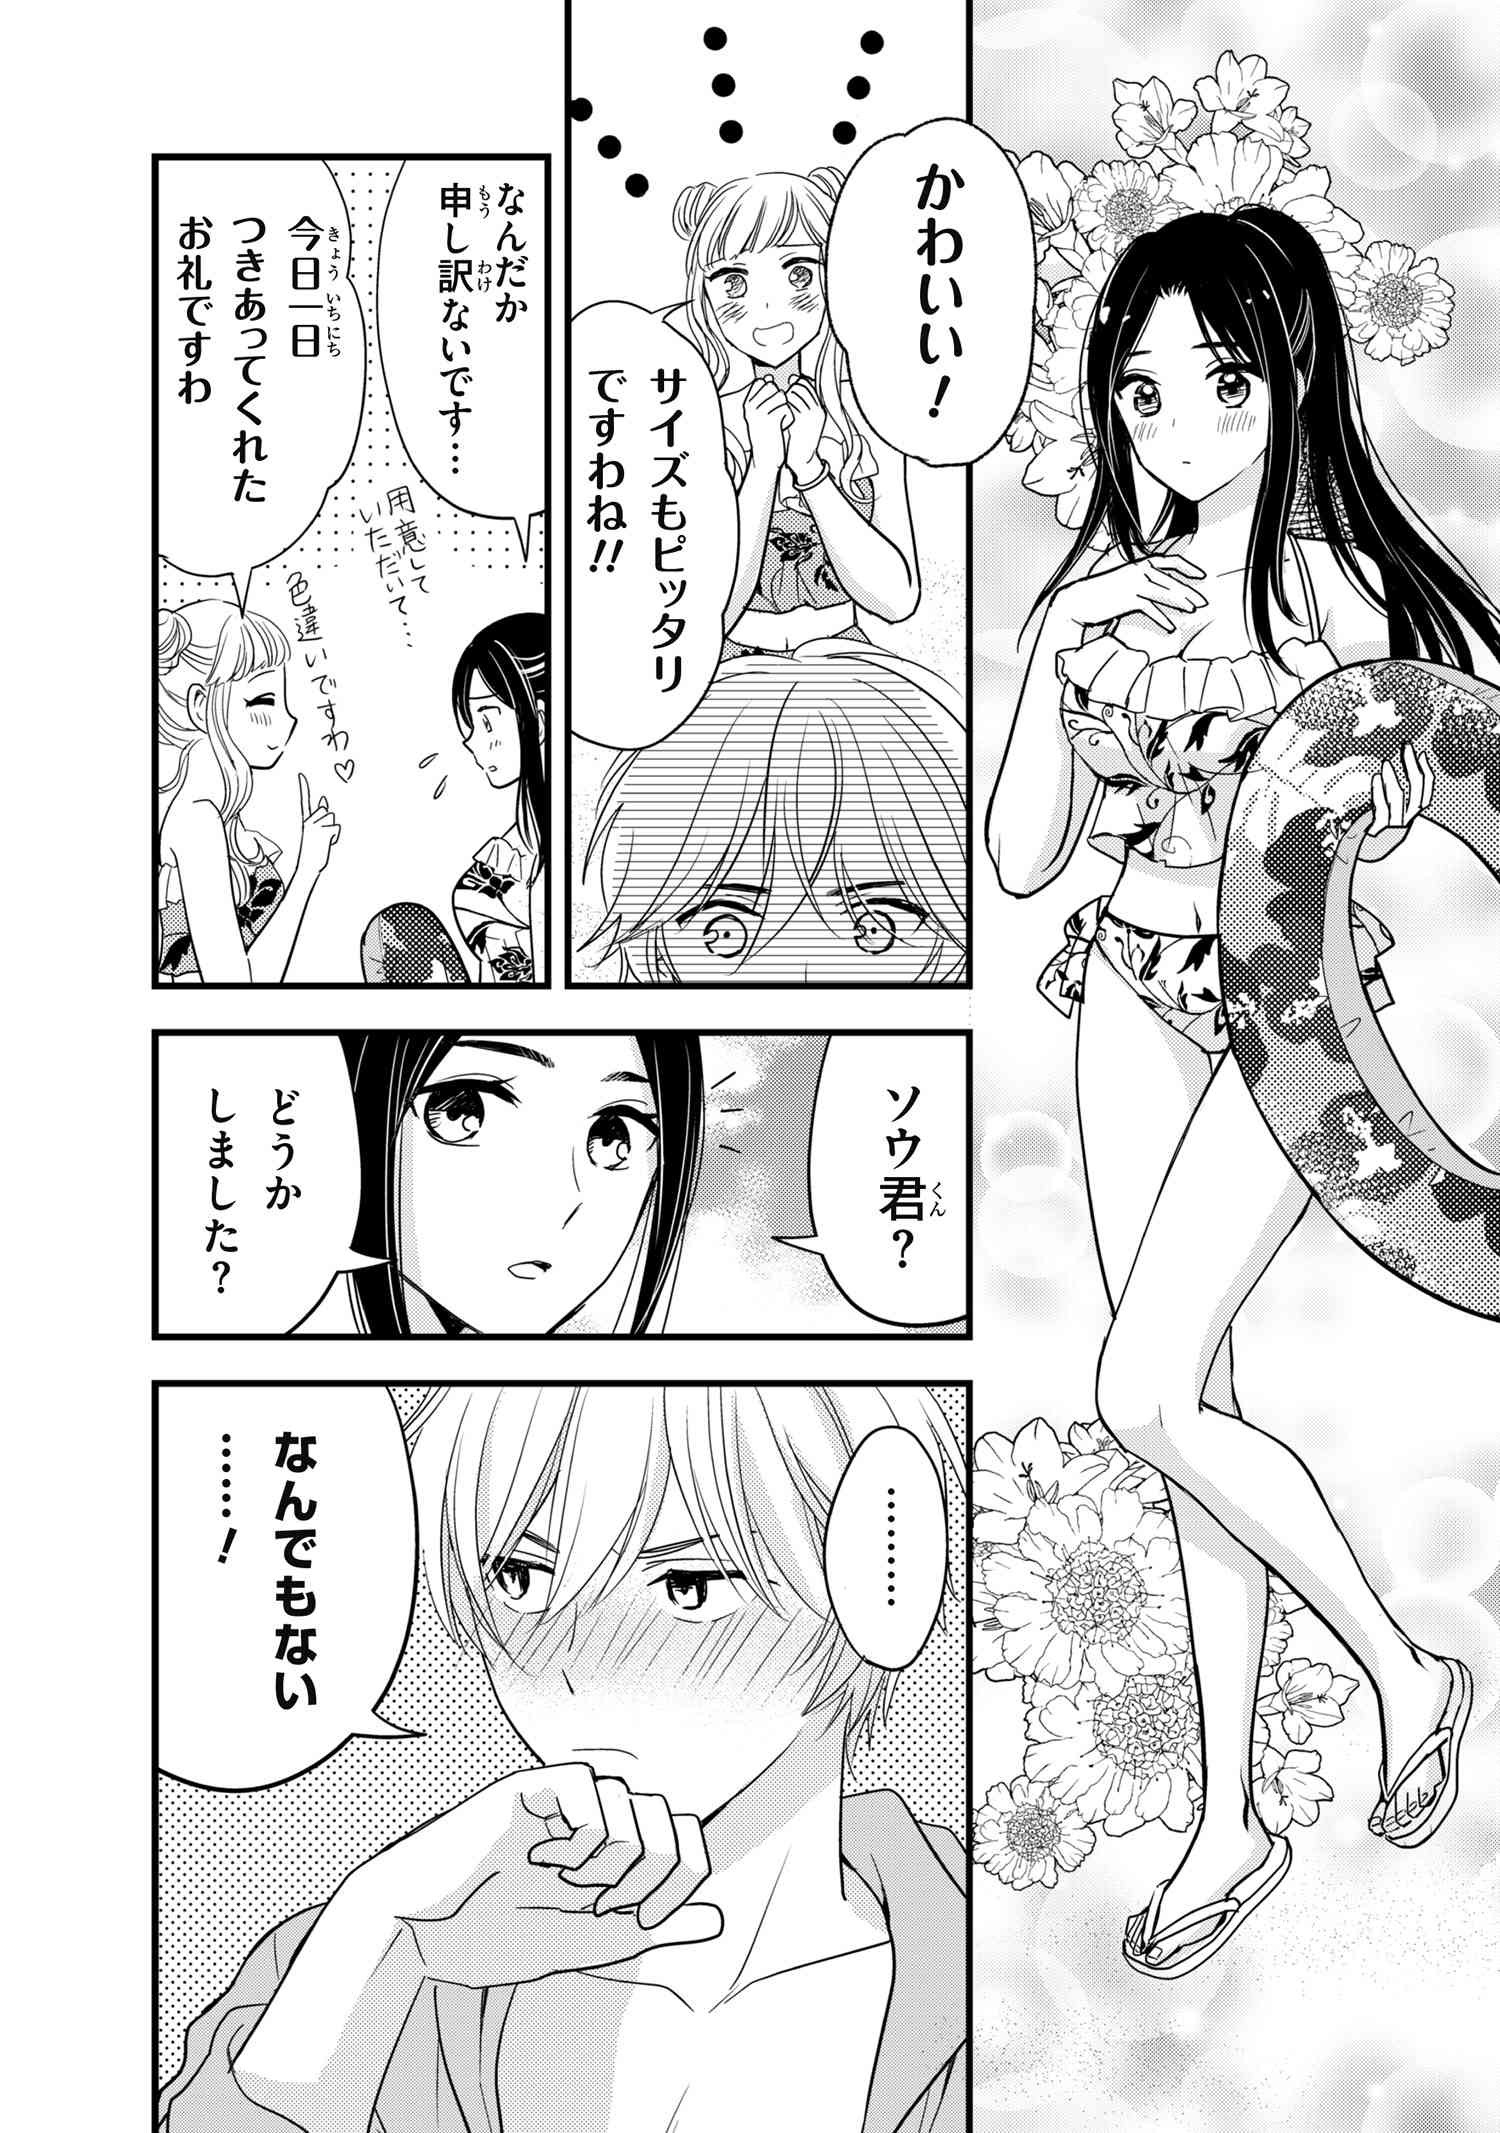 Reiko no Fuugi Akuyaku Reijou to Yobarete imasu ga, tada no Binbou Musume desu - Chapter 12.2 - Page 1